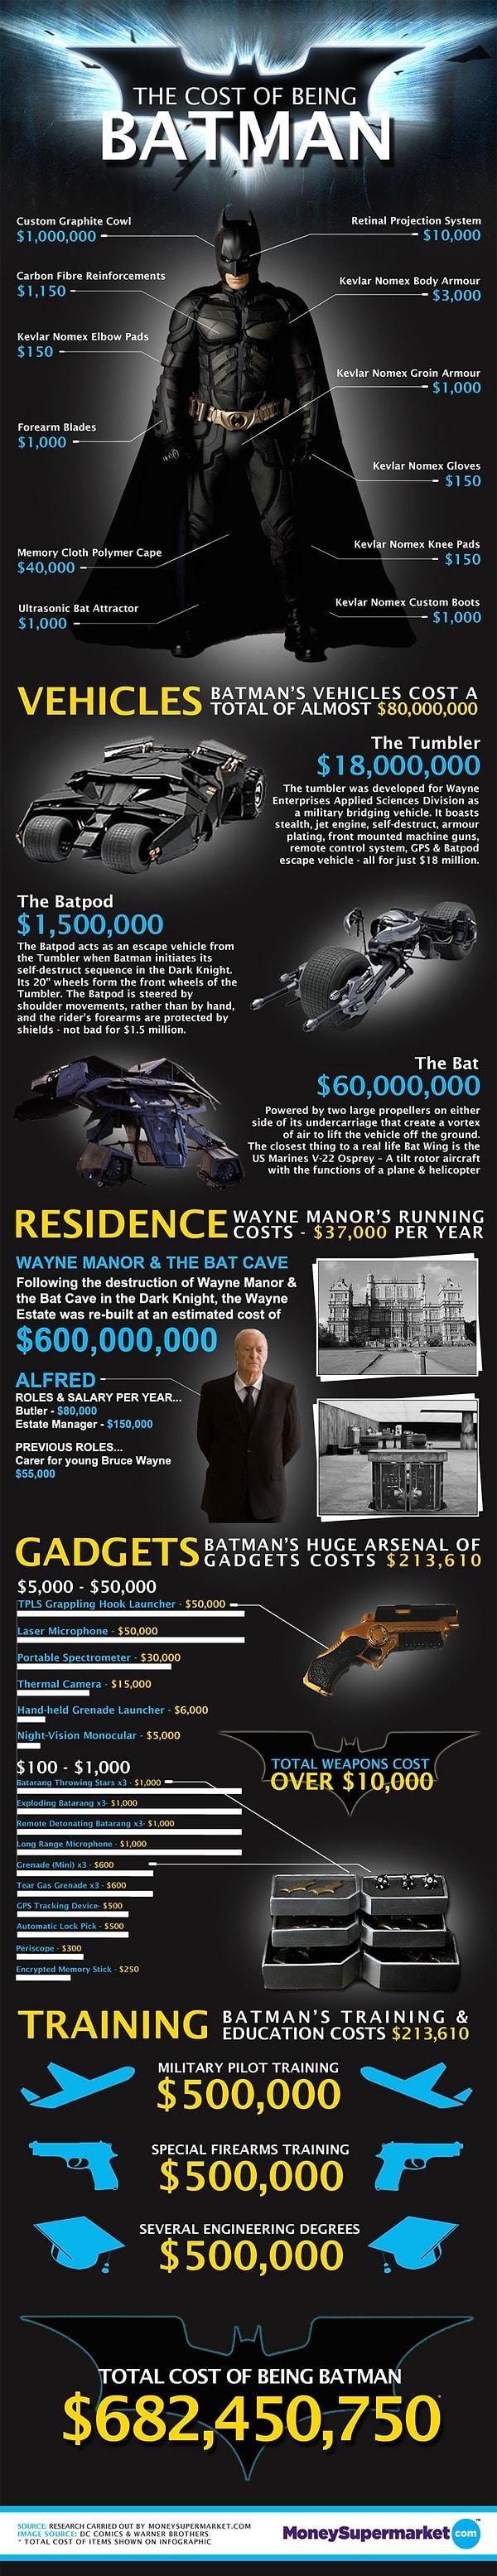 İşte Batman Olabilmek İçin Gerekli Miktarı Gösteren İnfografik: